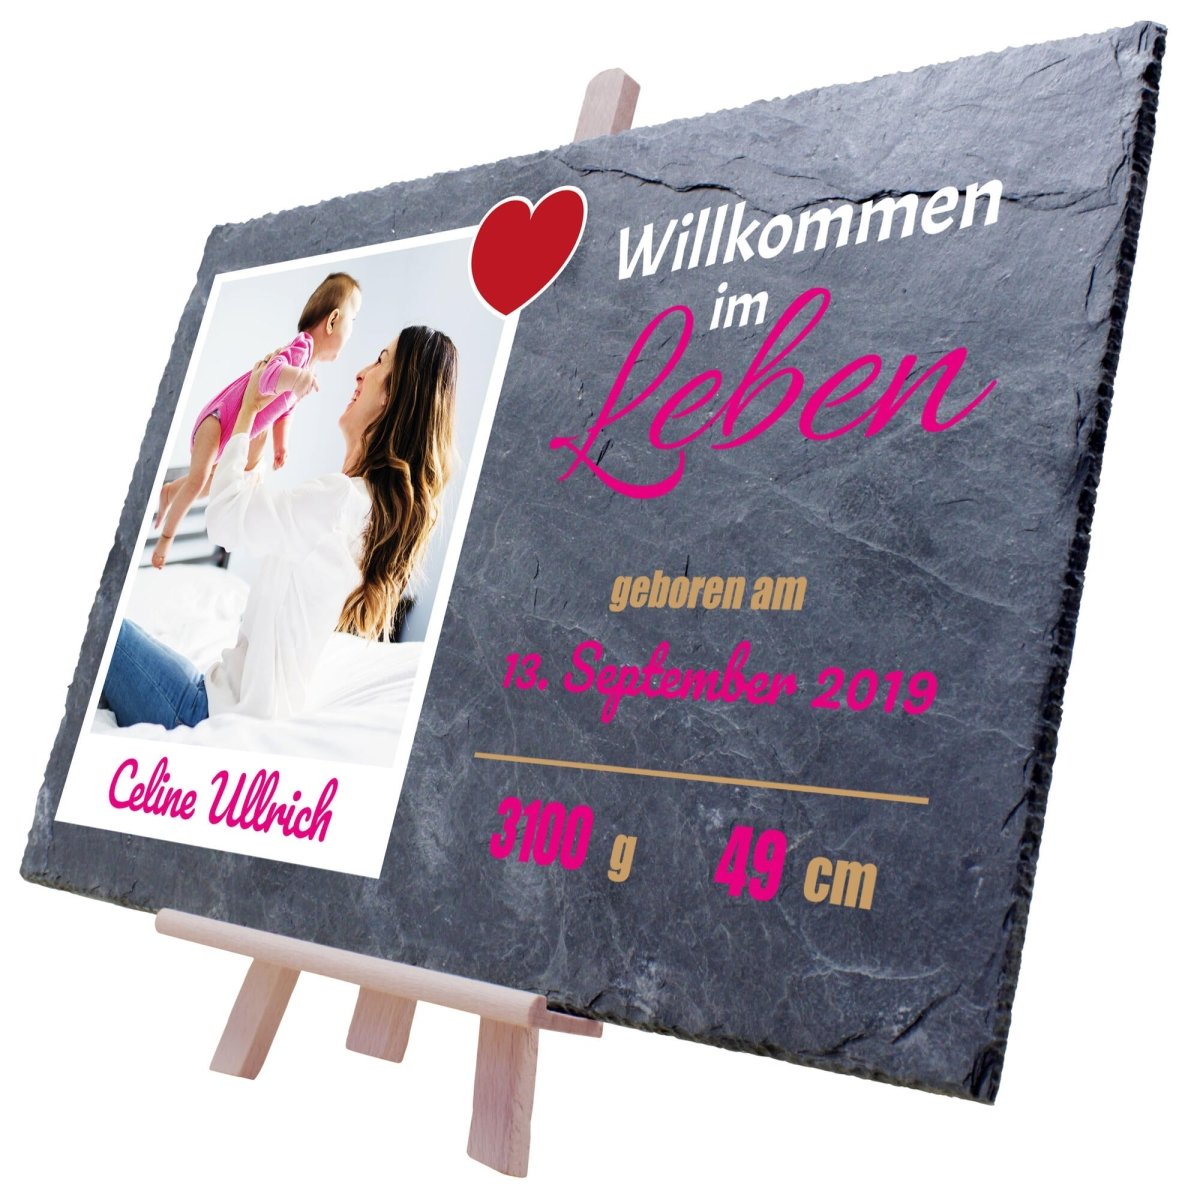 Schieferplatte Geburt Willkommen im Leben mit Polaroidbild, Name, Geburtsangaben und Herz in Pink M0410 - meinleinwand.de